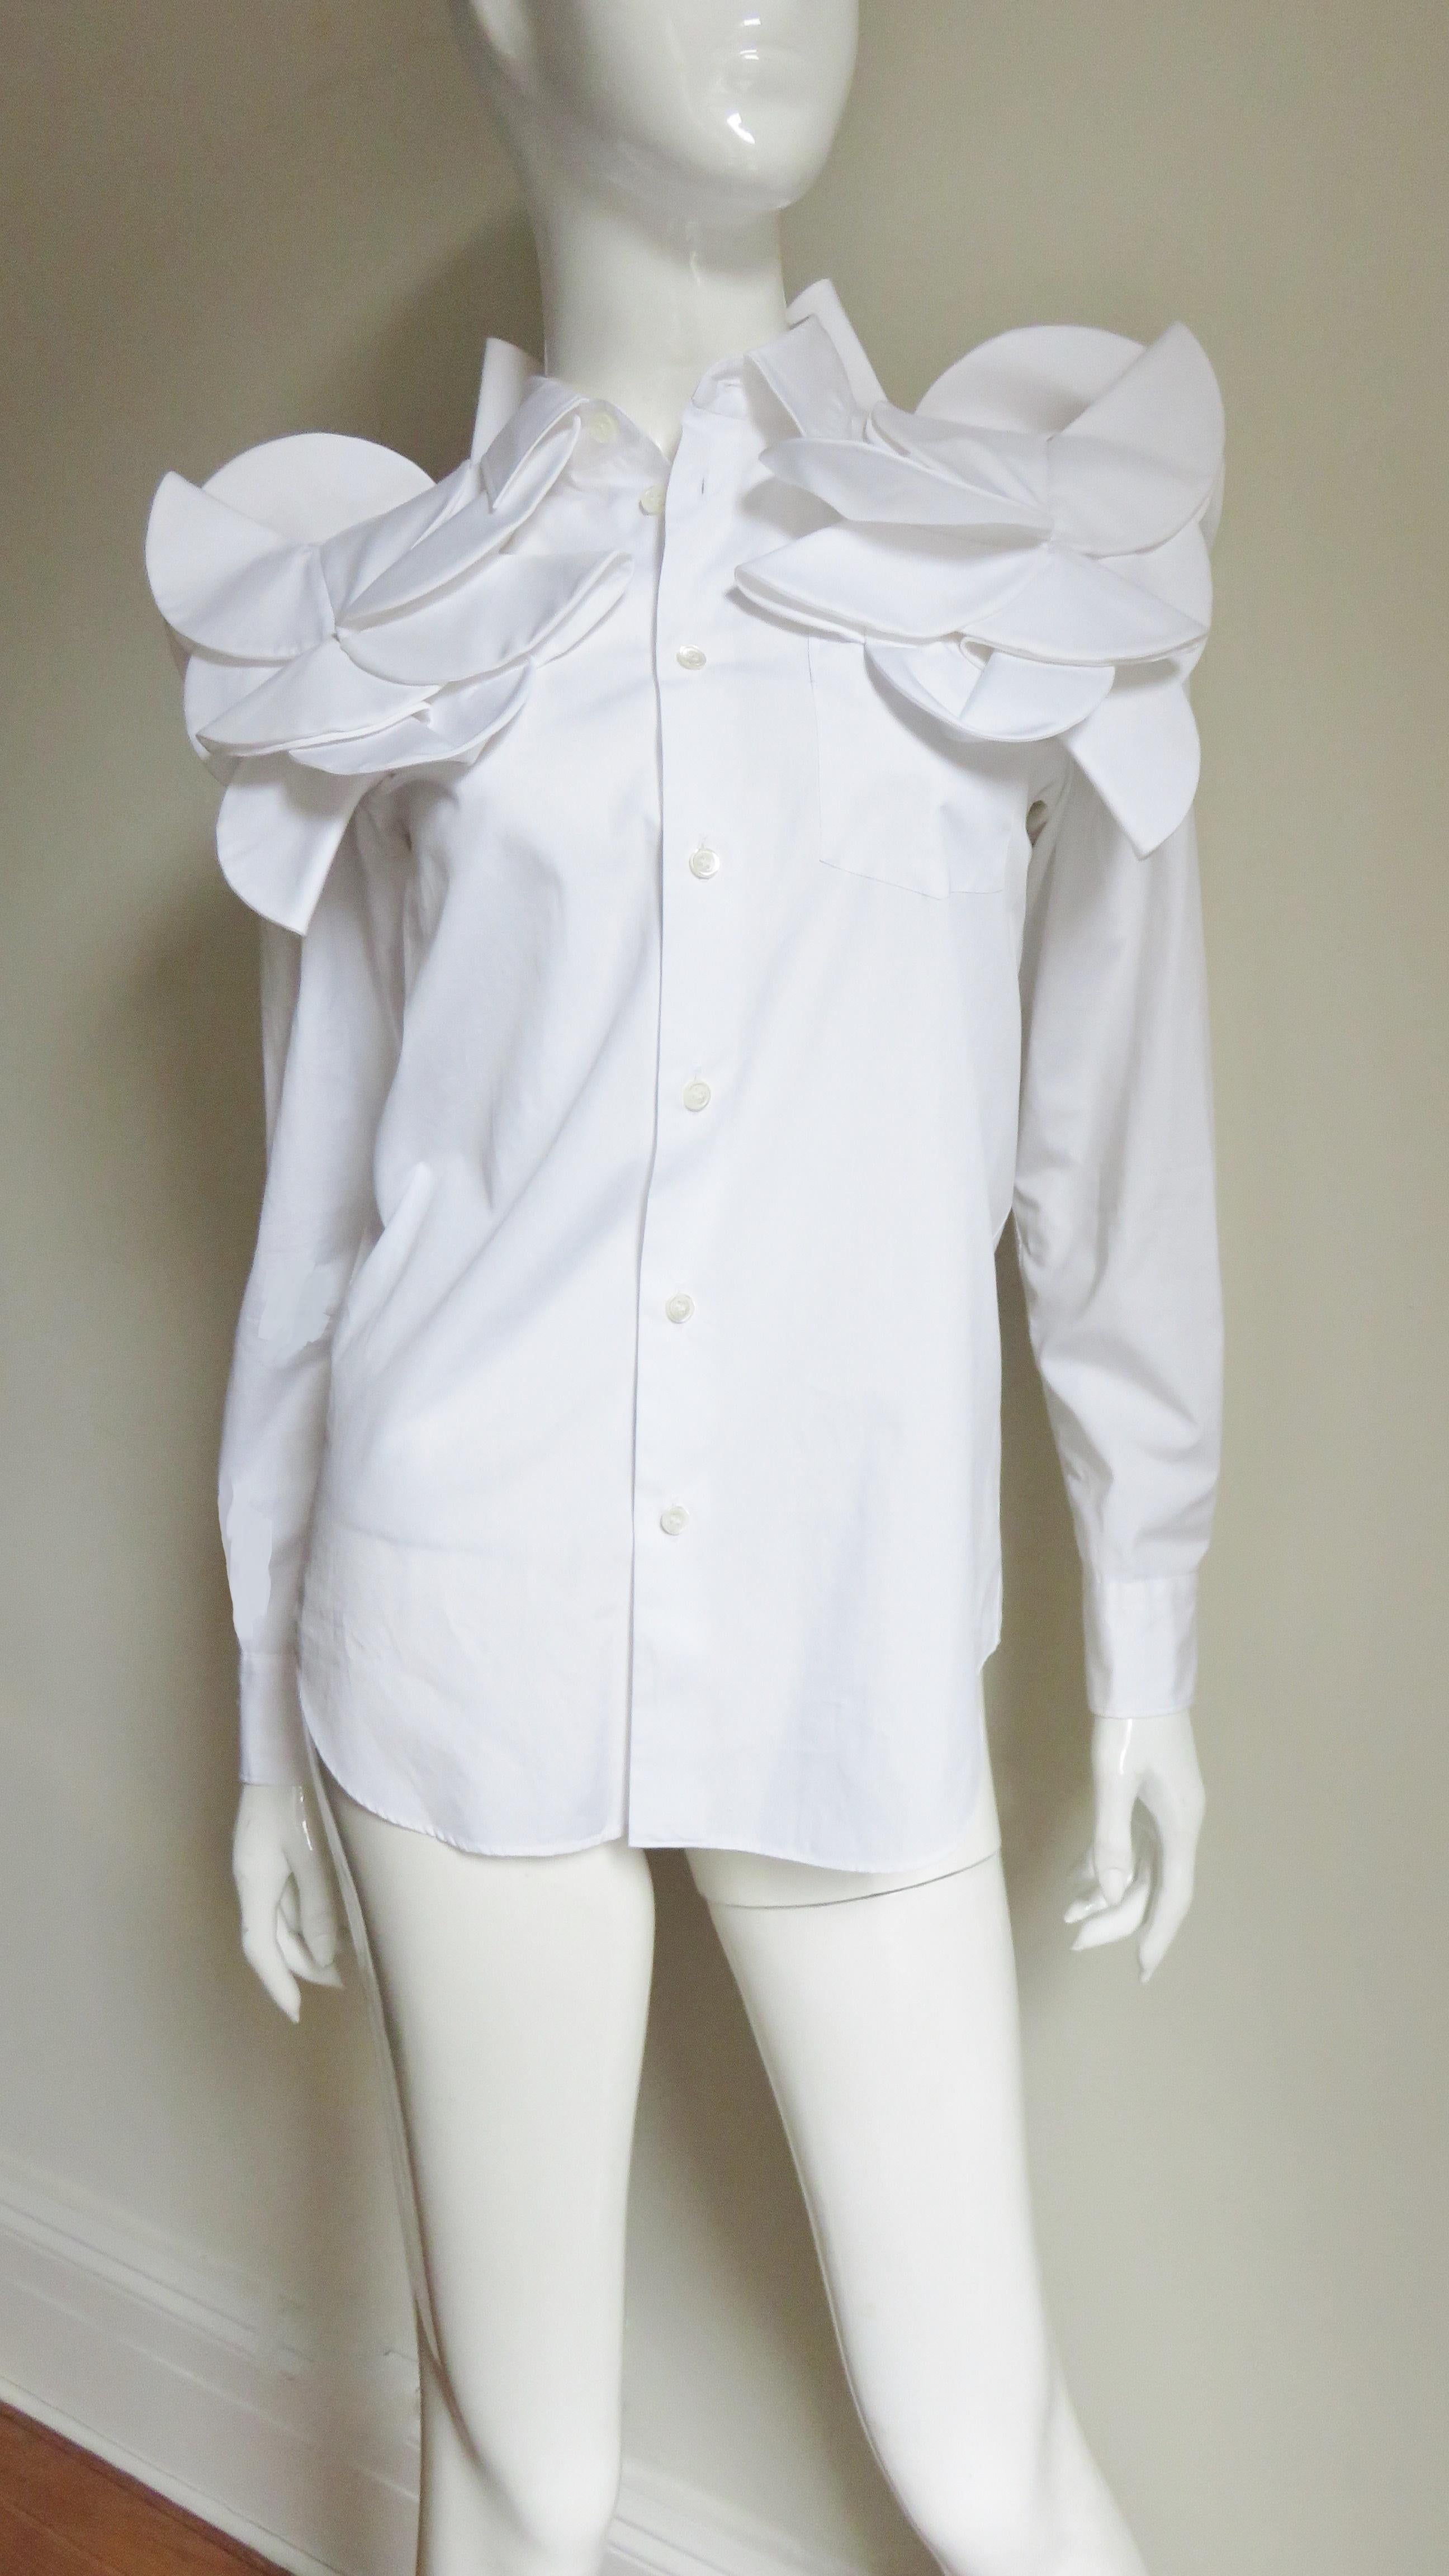 Une fabuleuse chemise en coton blanc par Junya Watanabe pour Comme des Garcons.  Il a un col de chemise, des poignets et se ferme sur le devant avec des boutons en nacre.  Le long des épaules, du haut de la poitrine et du dos, dans le même tissu, se